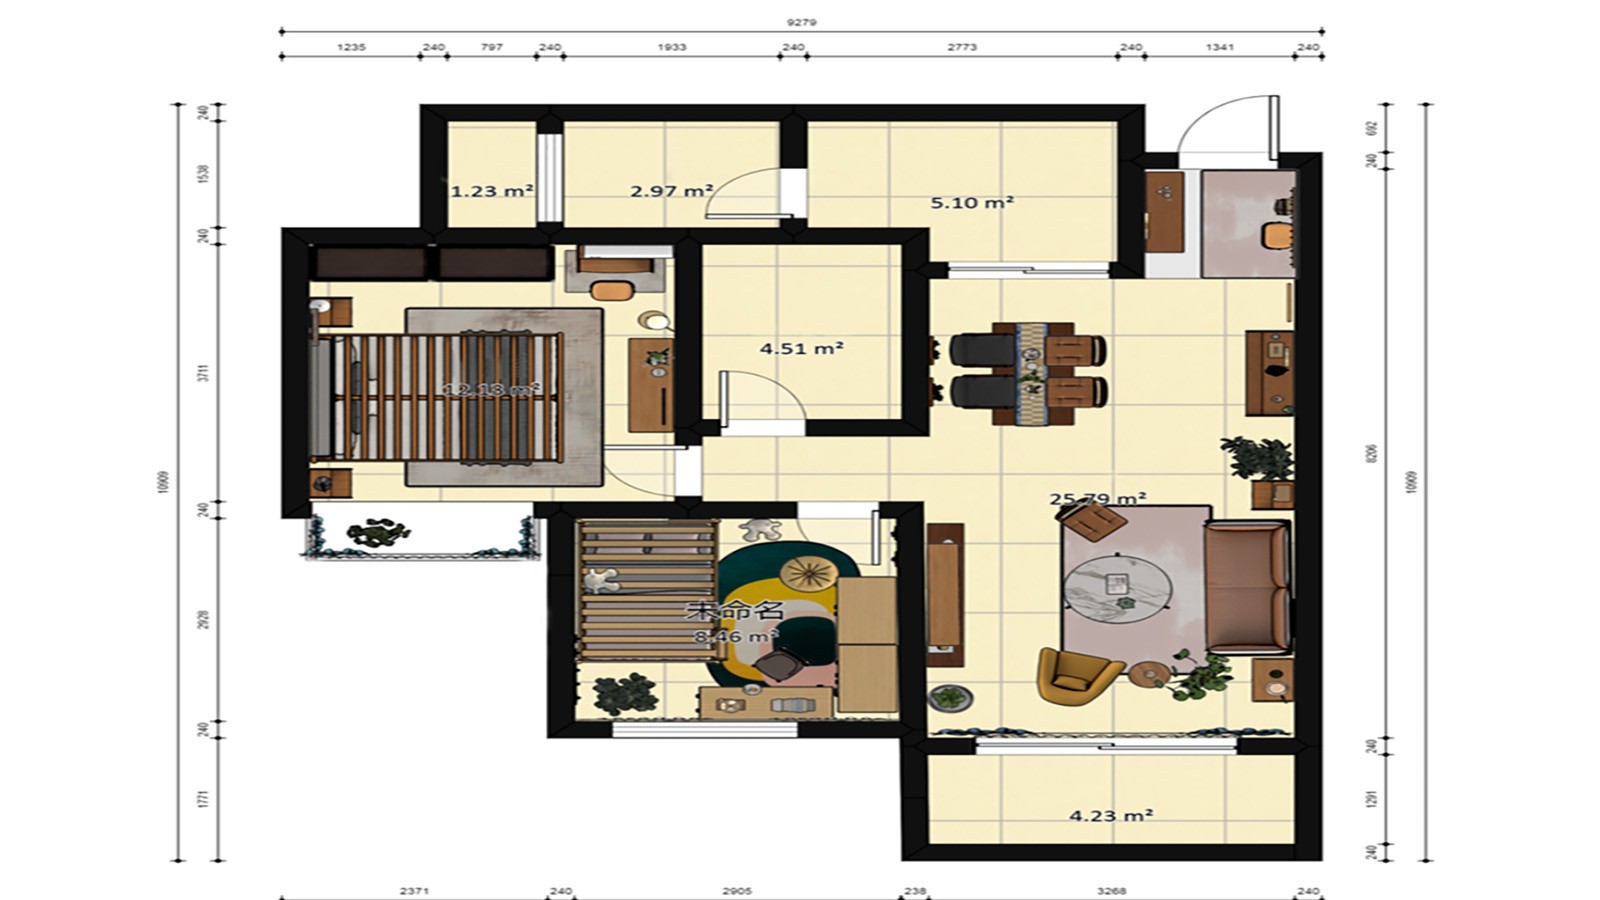 98现代三房装修效果图,蔓延着爱意满屋装修案例效果图-美广网(图1)